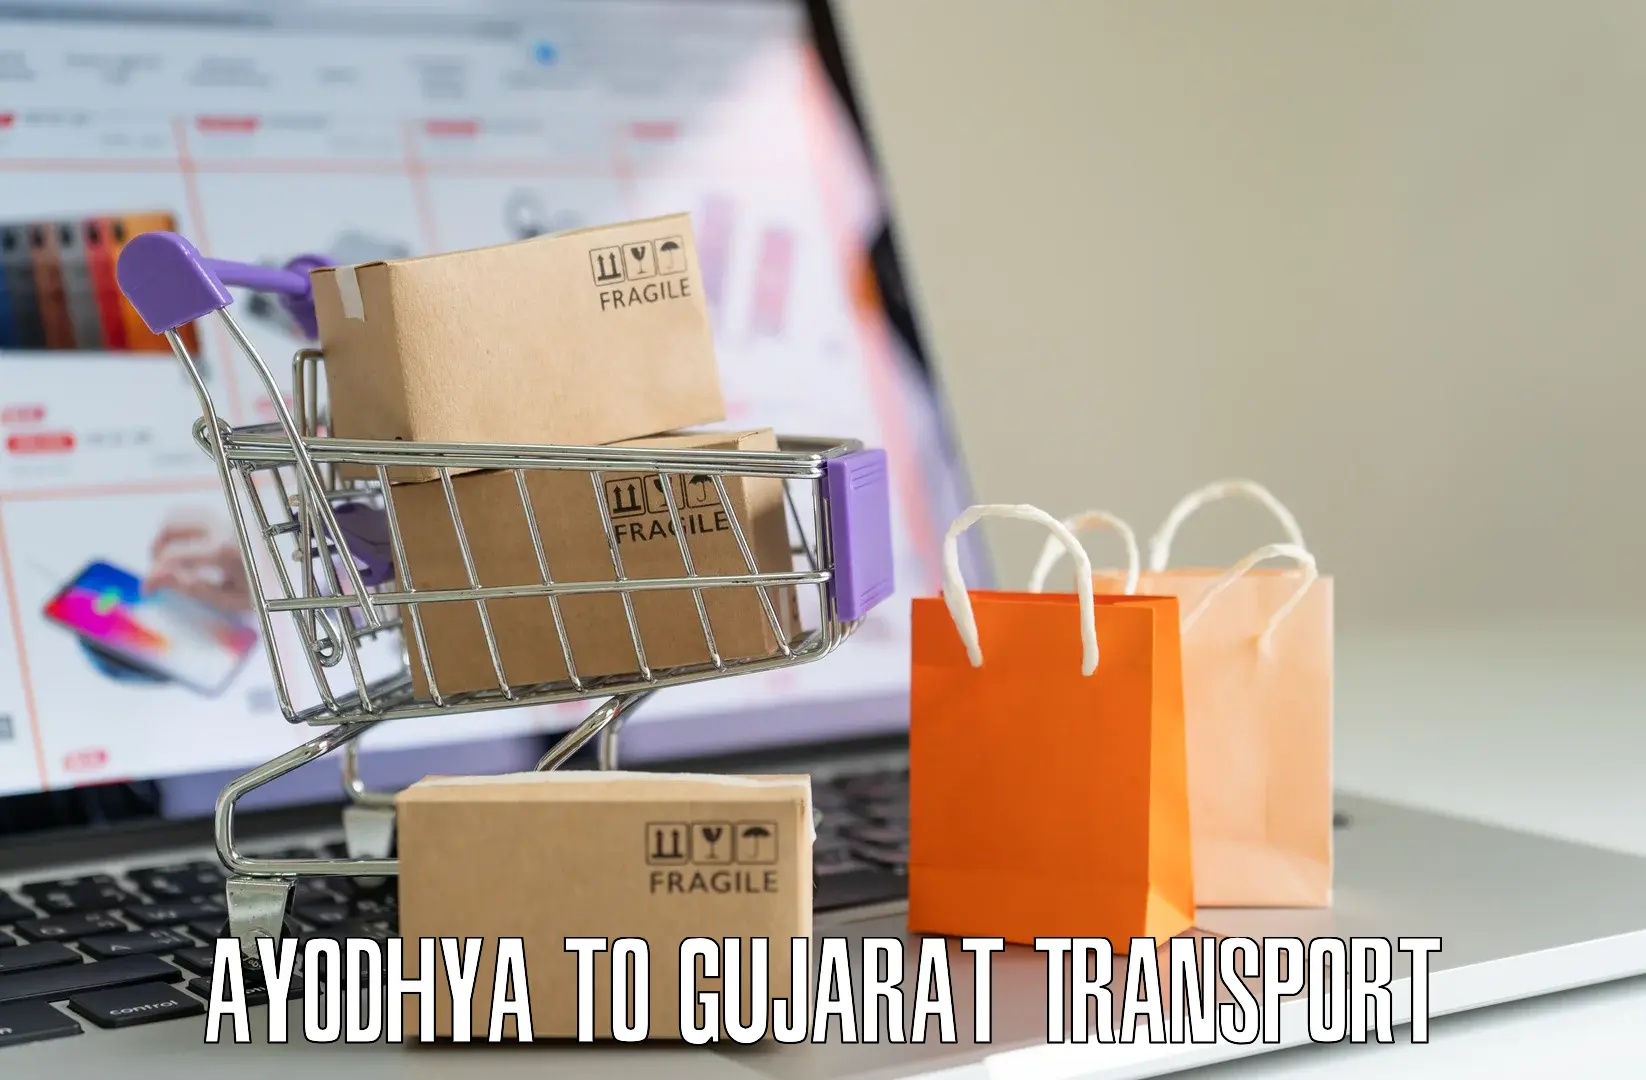 Intercity transport Ayodhya to Vatadara